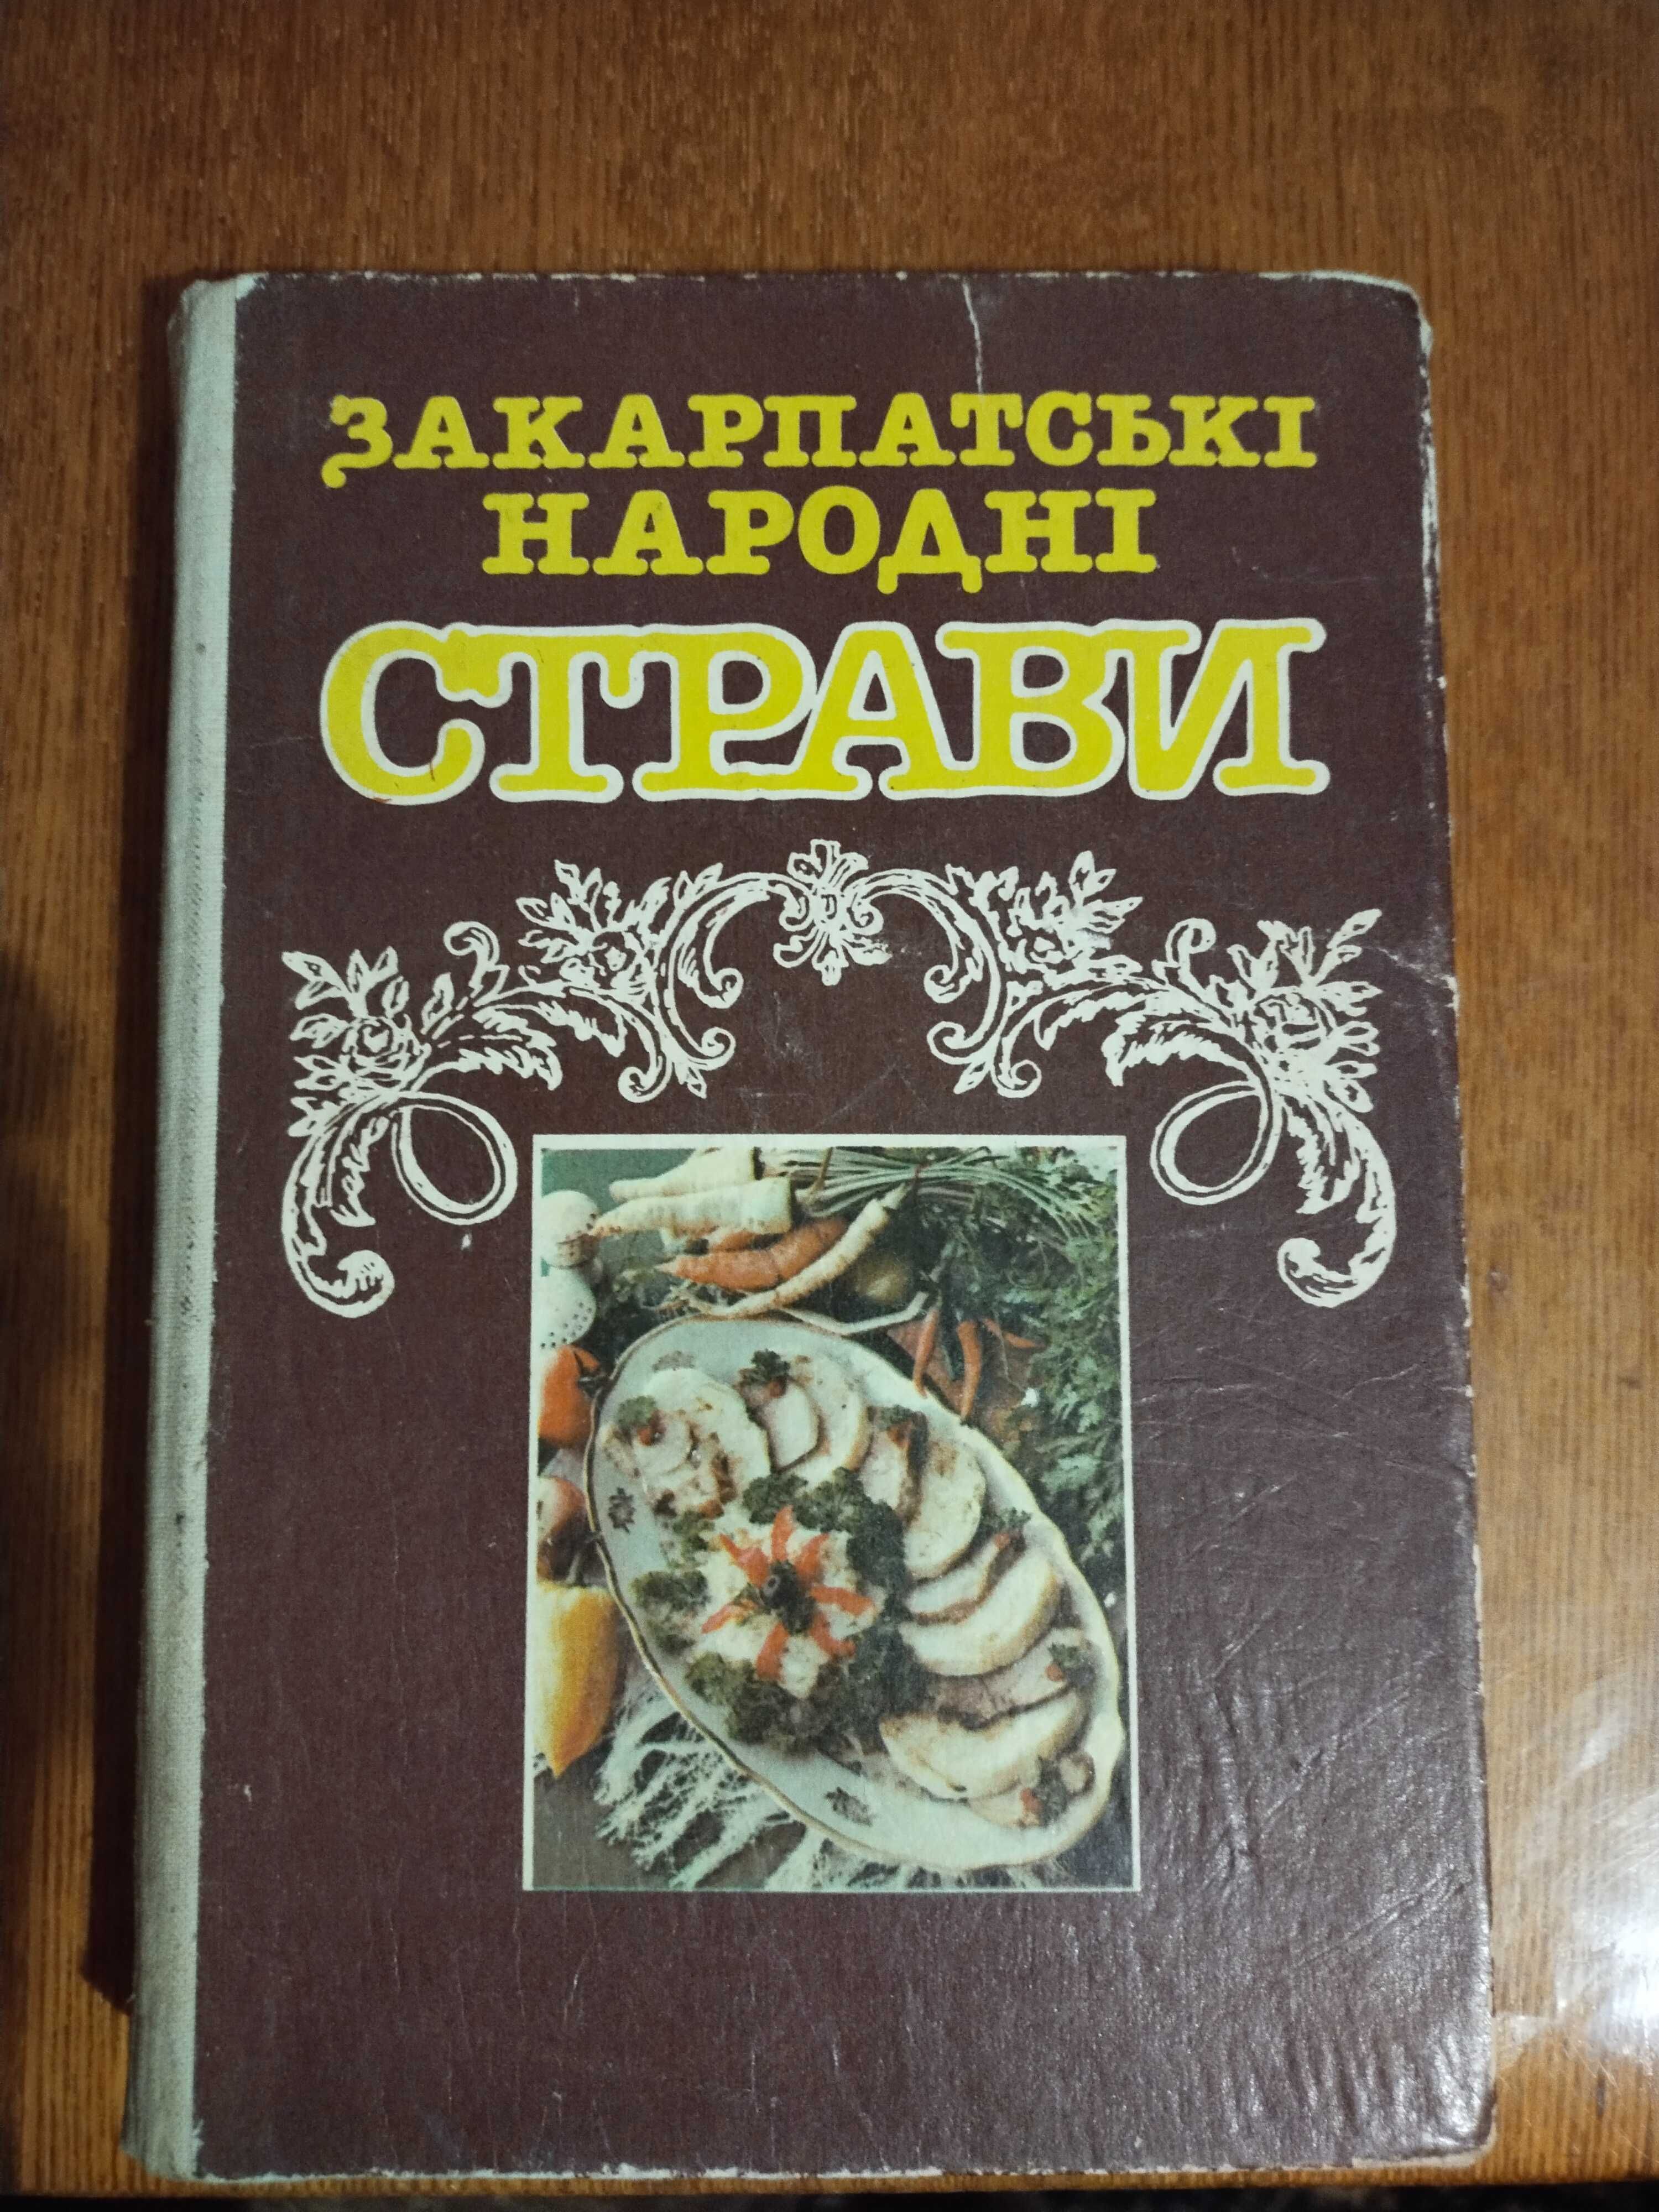 Продам книгу - Закарпатьскі  народні страви